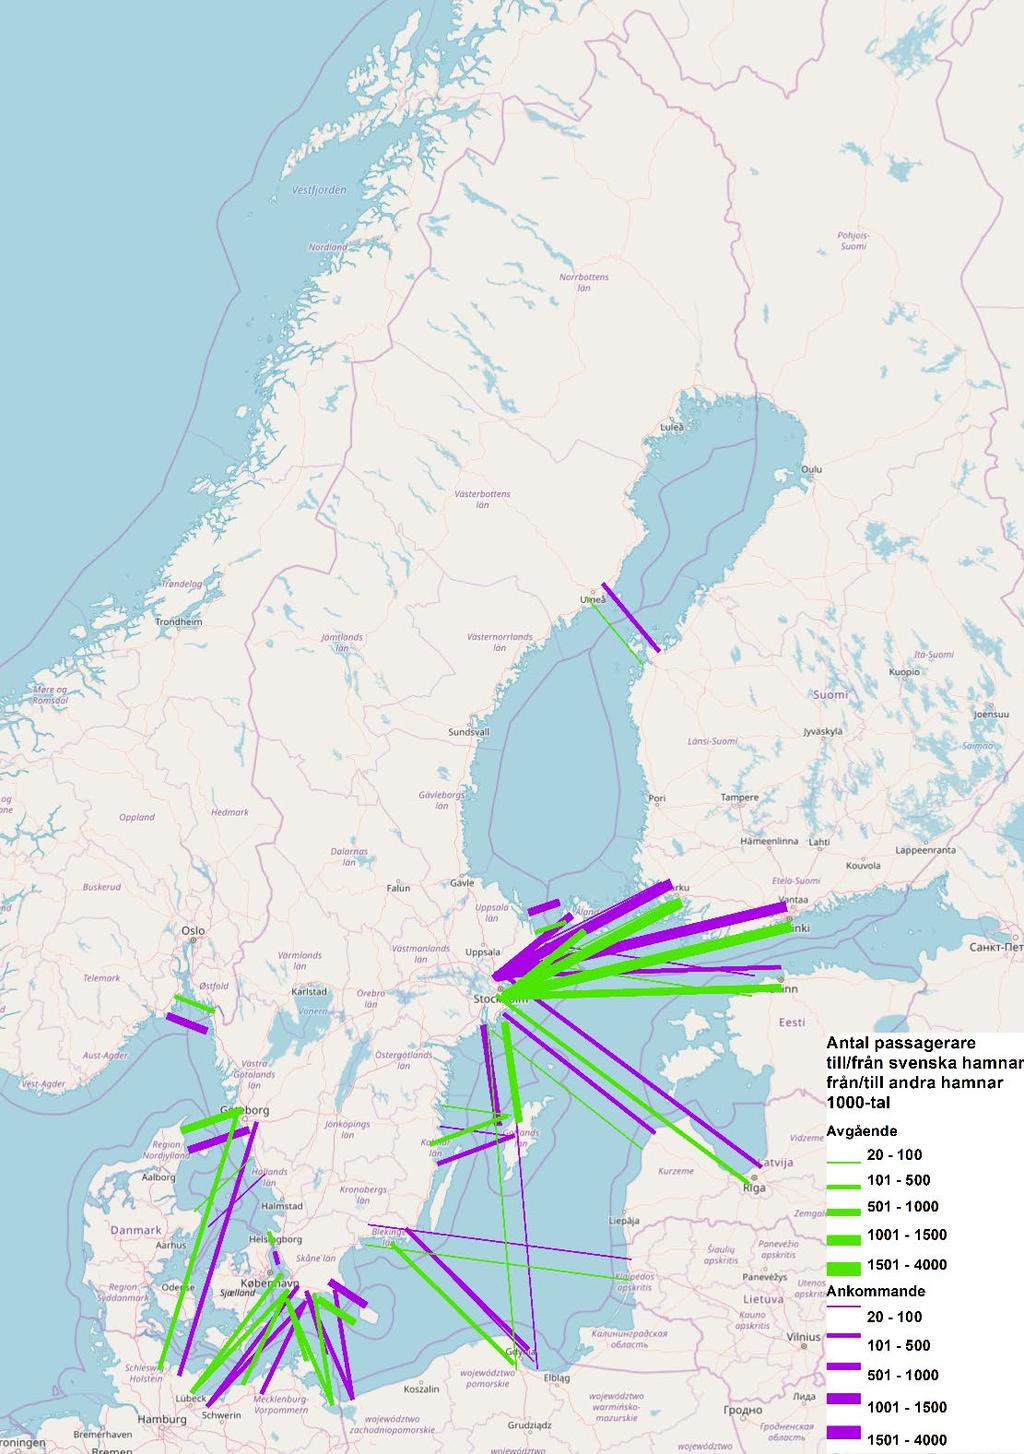 Figur 3.8. Antal passagerare till/från svenska hamnar från/till andra hamnar. Anm: Linjer med ett underlag som understiger 20 000 passagerare har exkluderats.